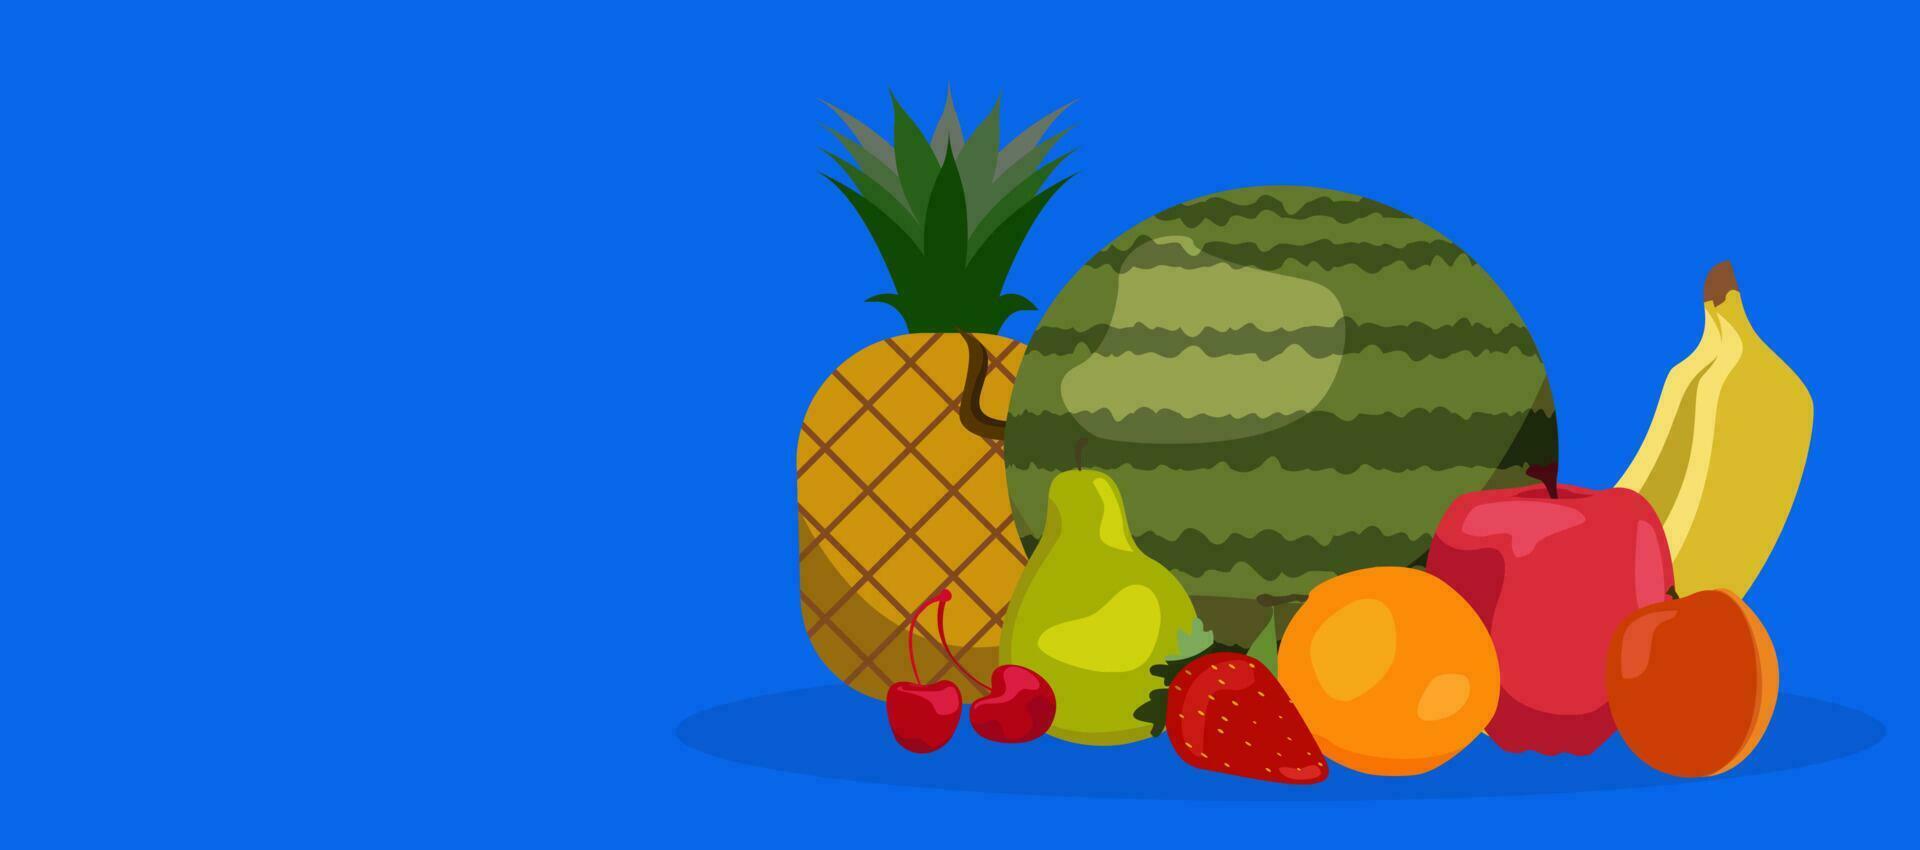 vector biologisch vruchten. gezond voedsel. reeks vruchten. gezond eetpatroon concept. aardbeien, banaan, granaatappel, ananas, appel oranje watermeloen abrikoos Peer kers